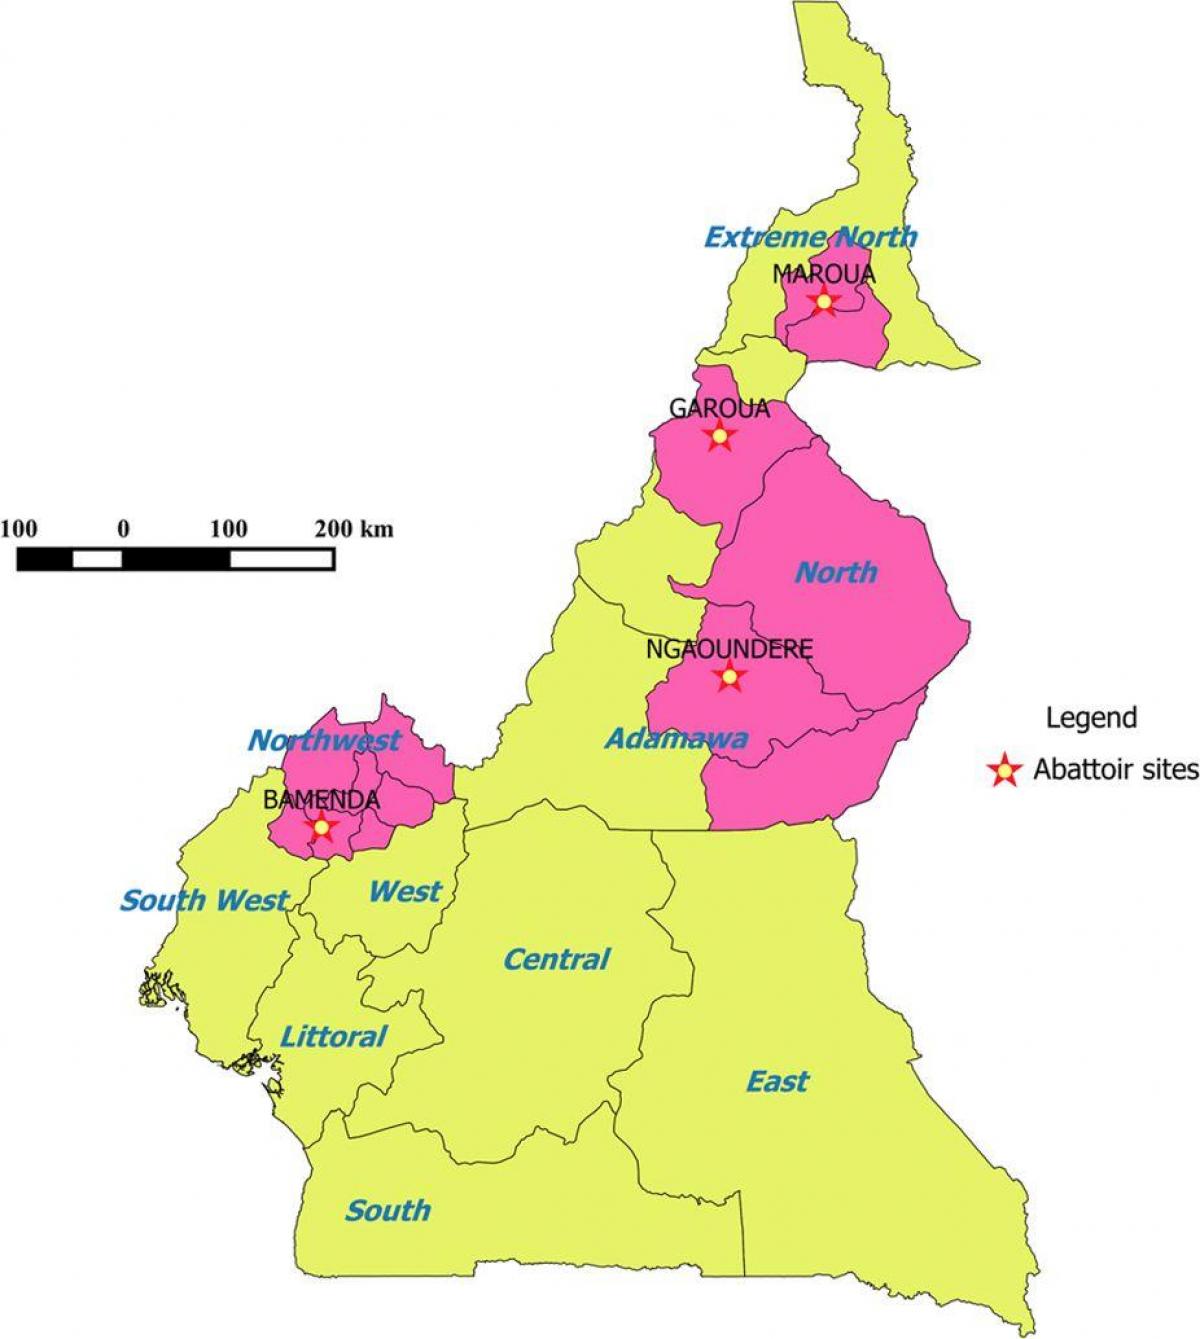 Kamerun treguar rajonet hartë